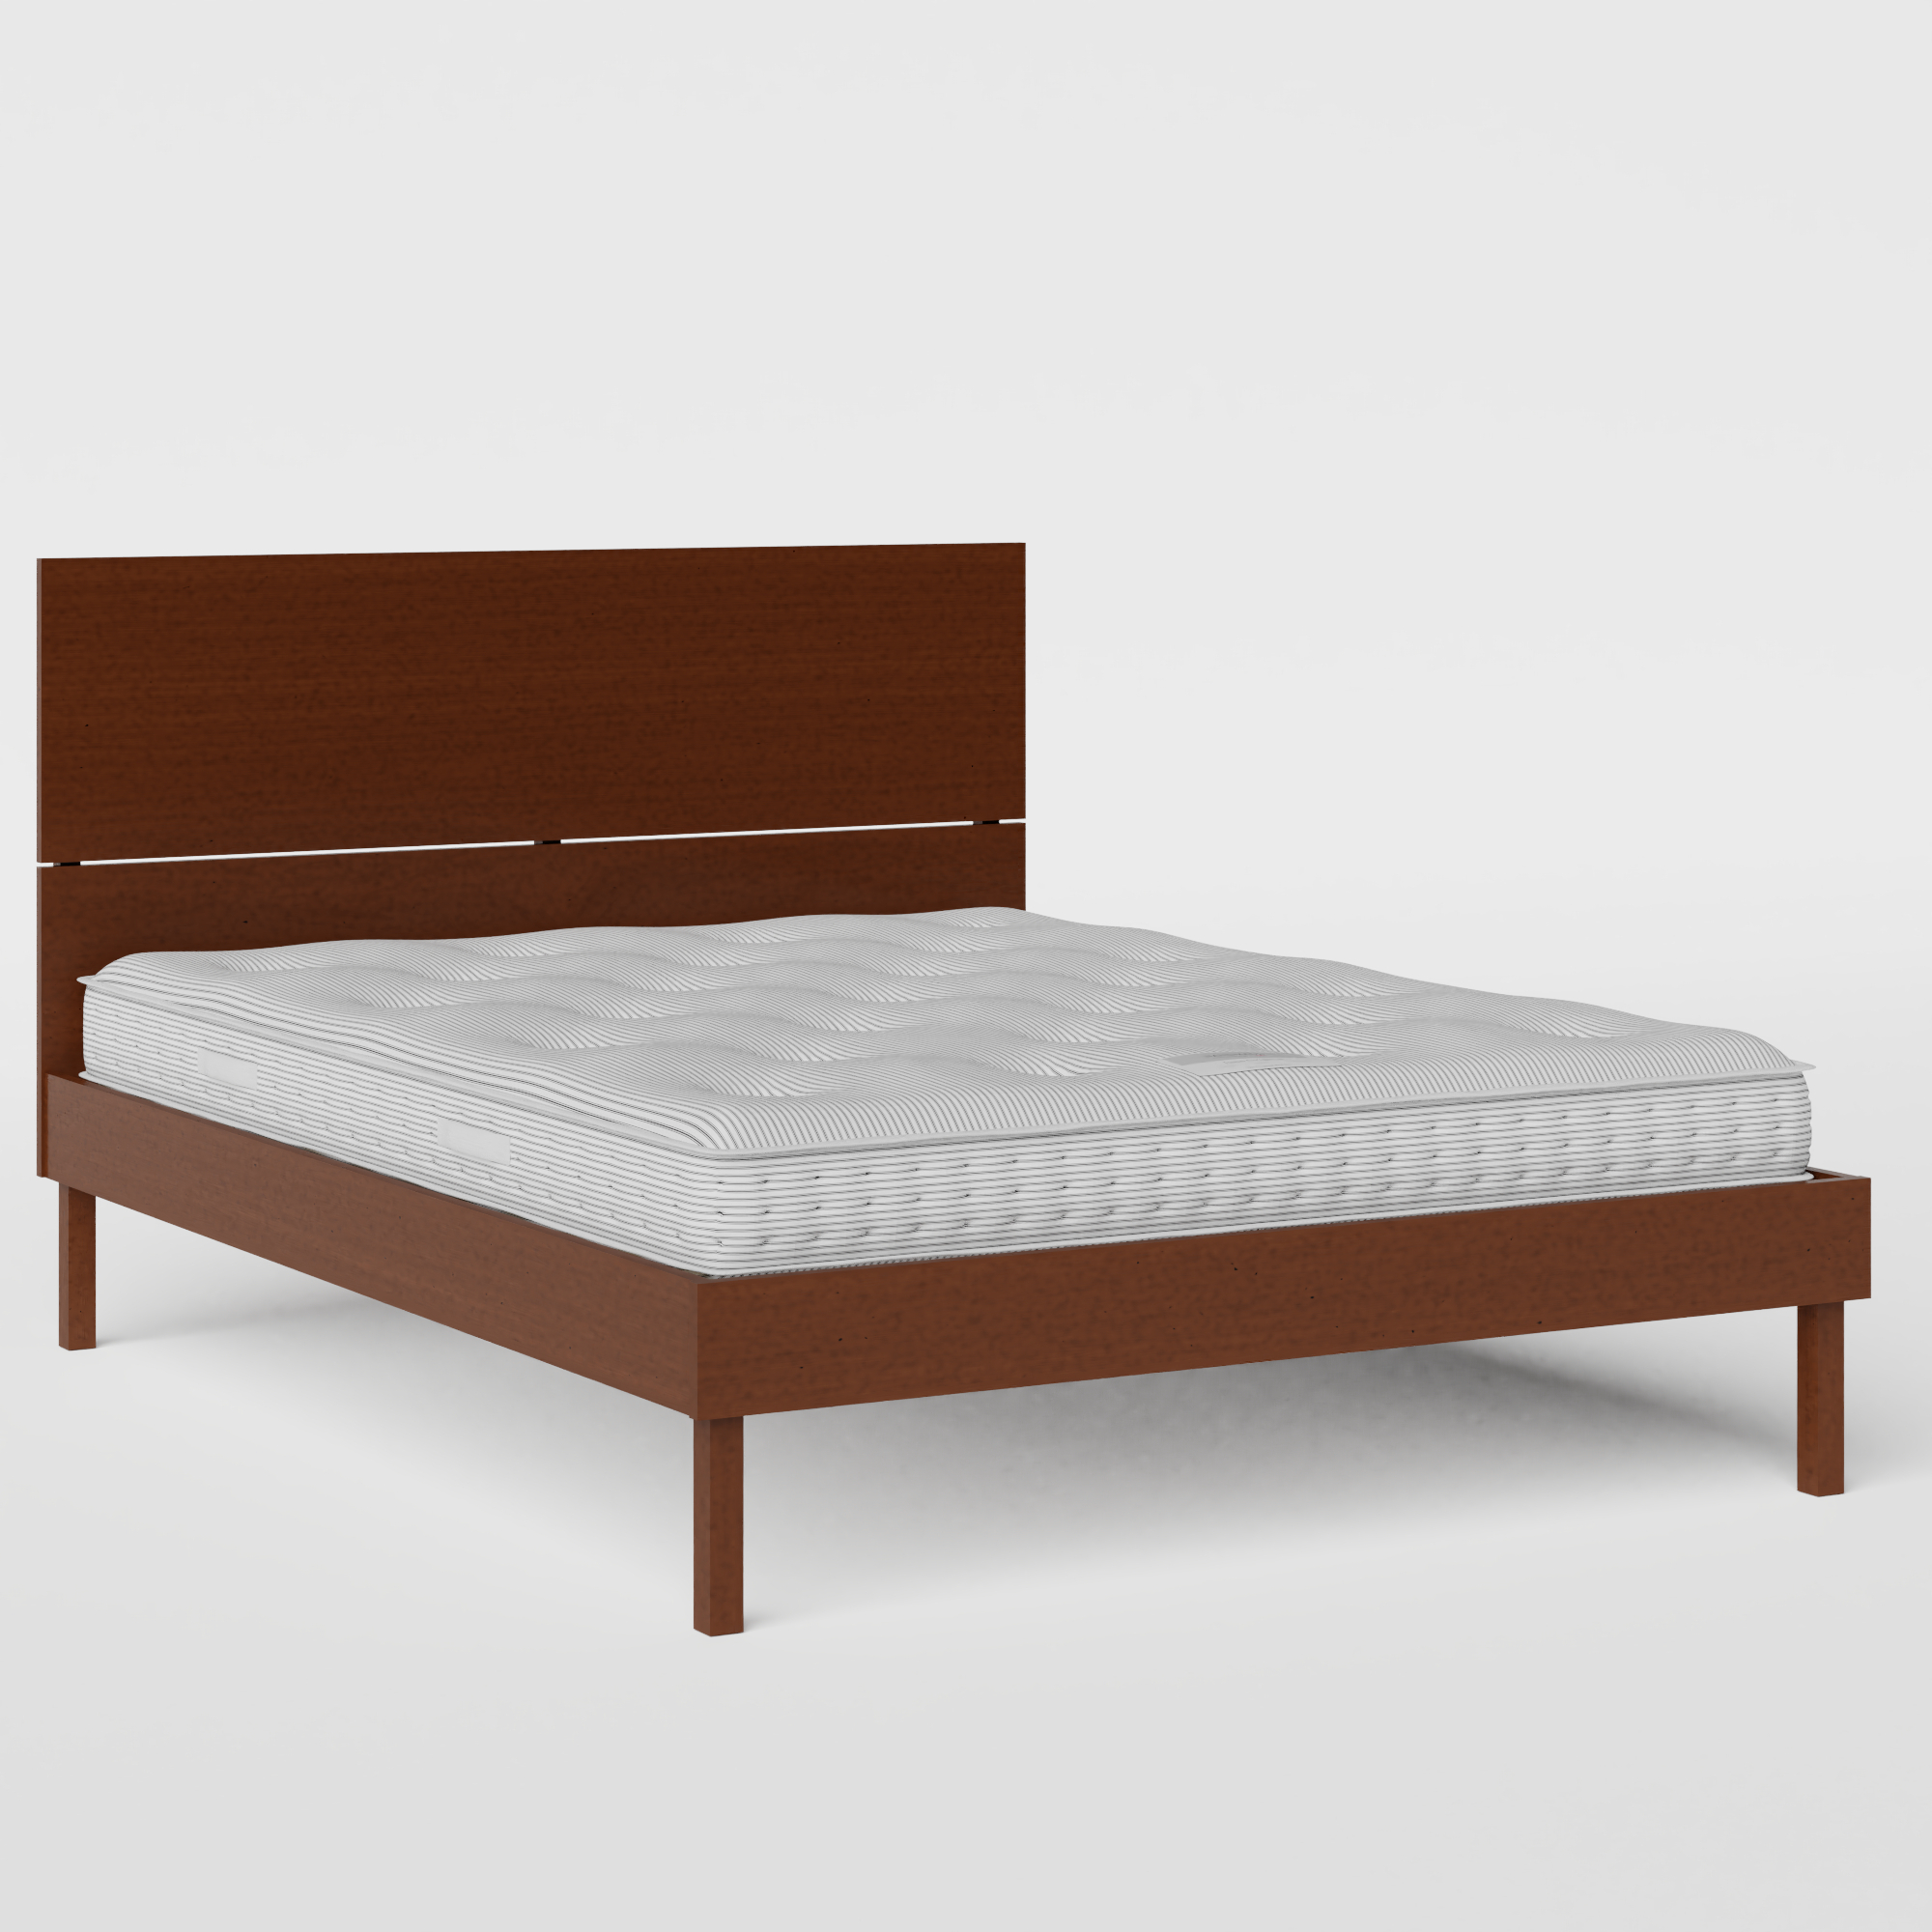 Misaki wood bed in dark cherry with Juno mattress